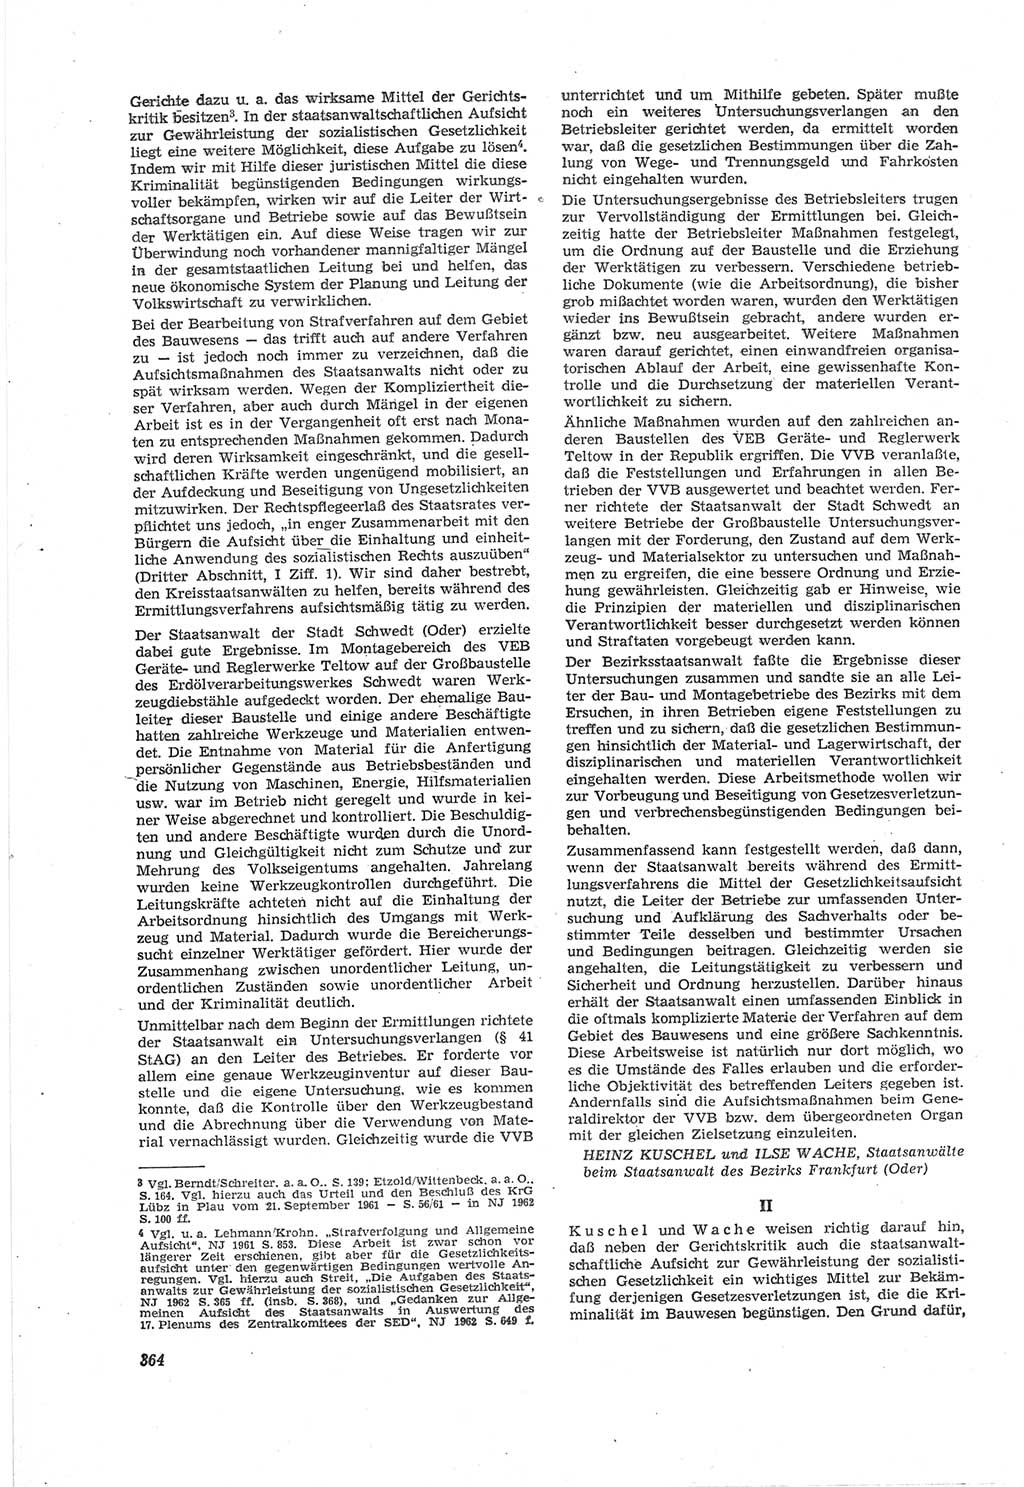 Neue Justiz (NJ), Zeitschrift für Recht und Rechtswissenschaft [Deutsche Demokratische Republik (DDR)], 18. Jahrgang 1964, Seite 364 (NJ DDR 1964, S. 364)